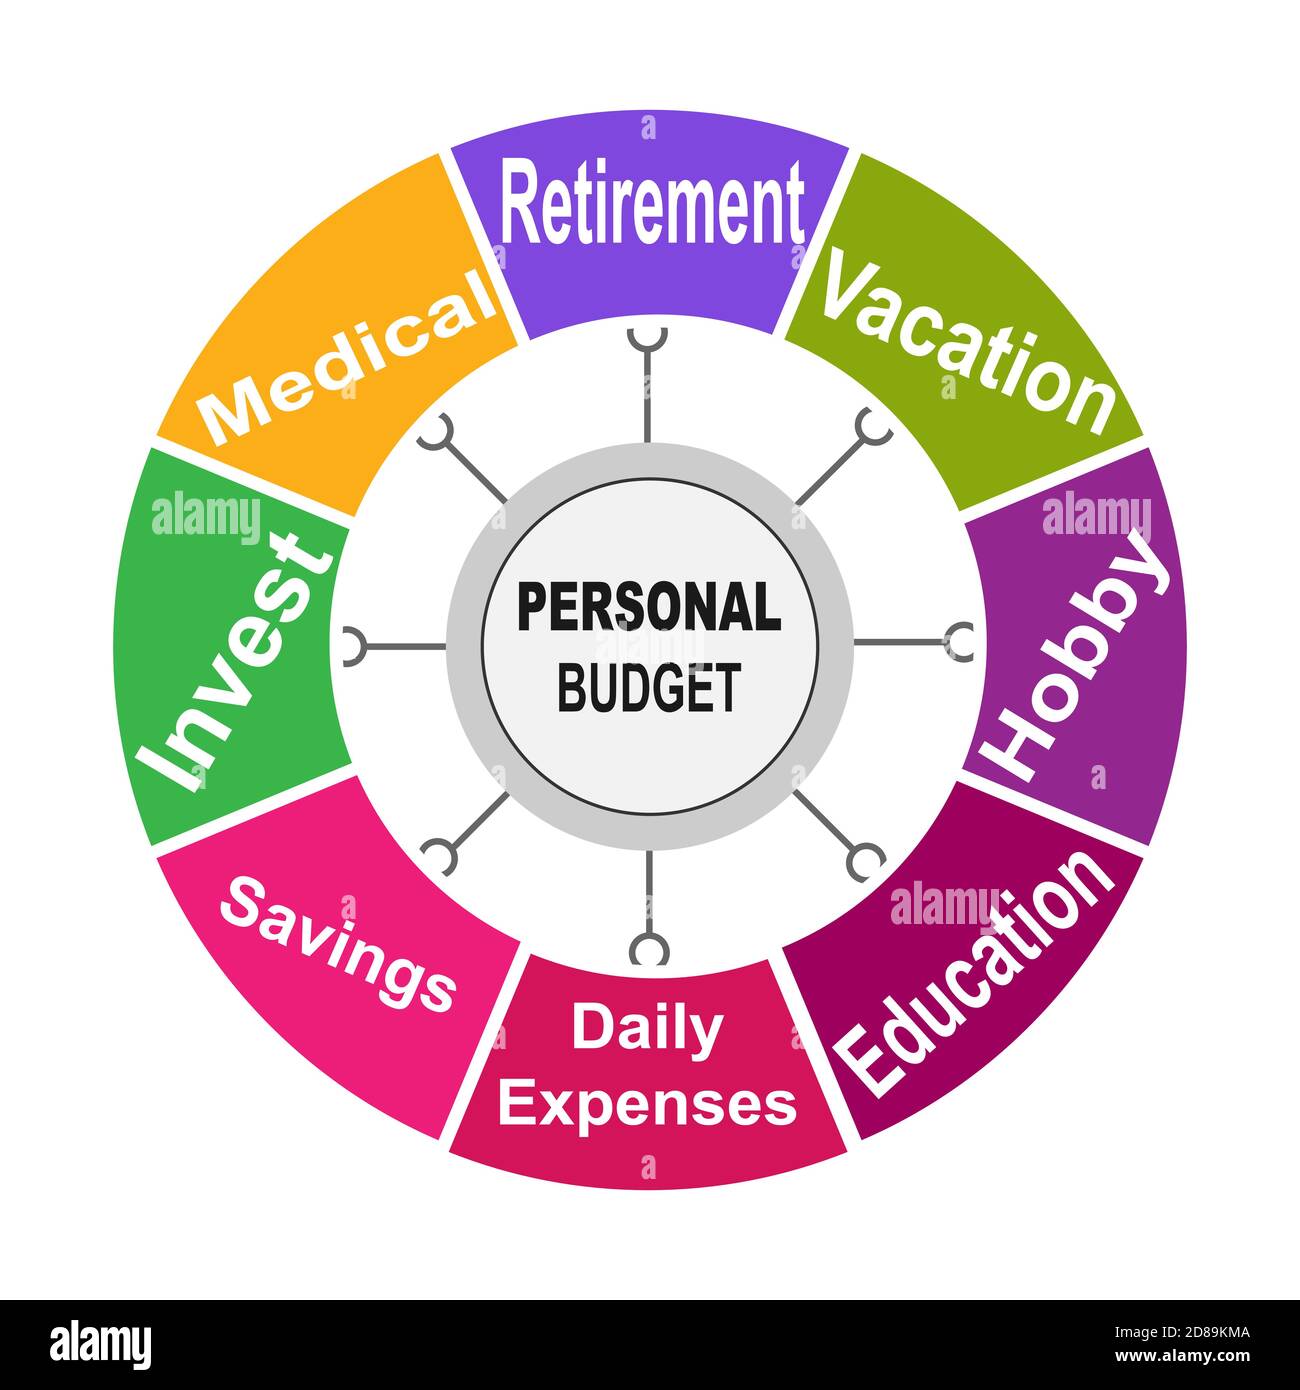 Personal budget - Wikipedia